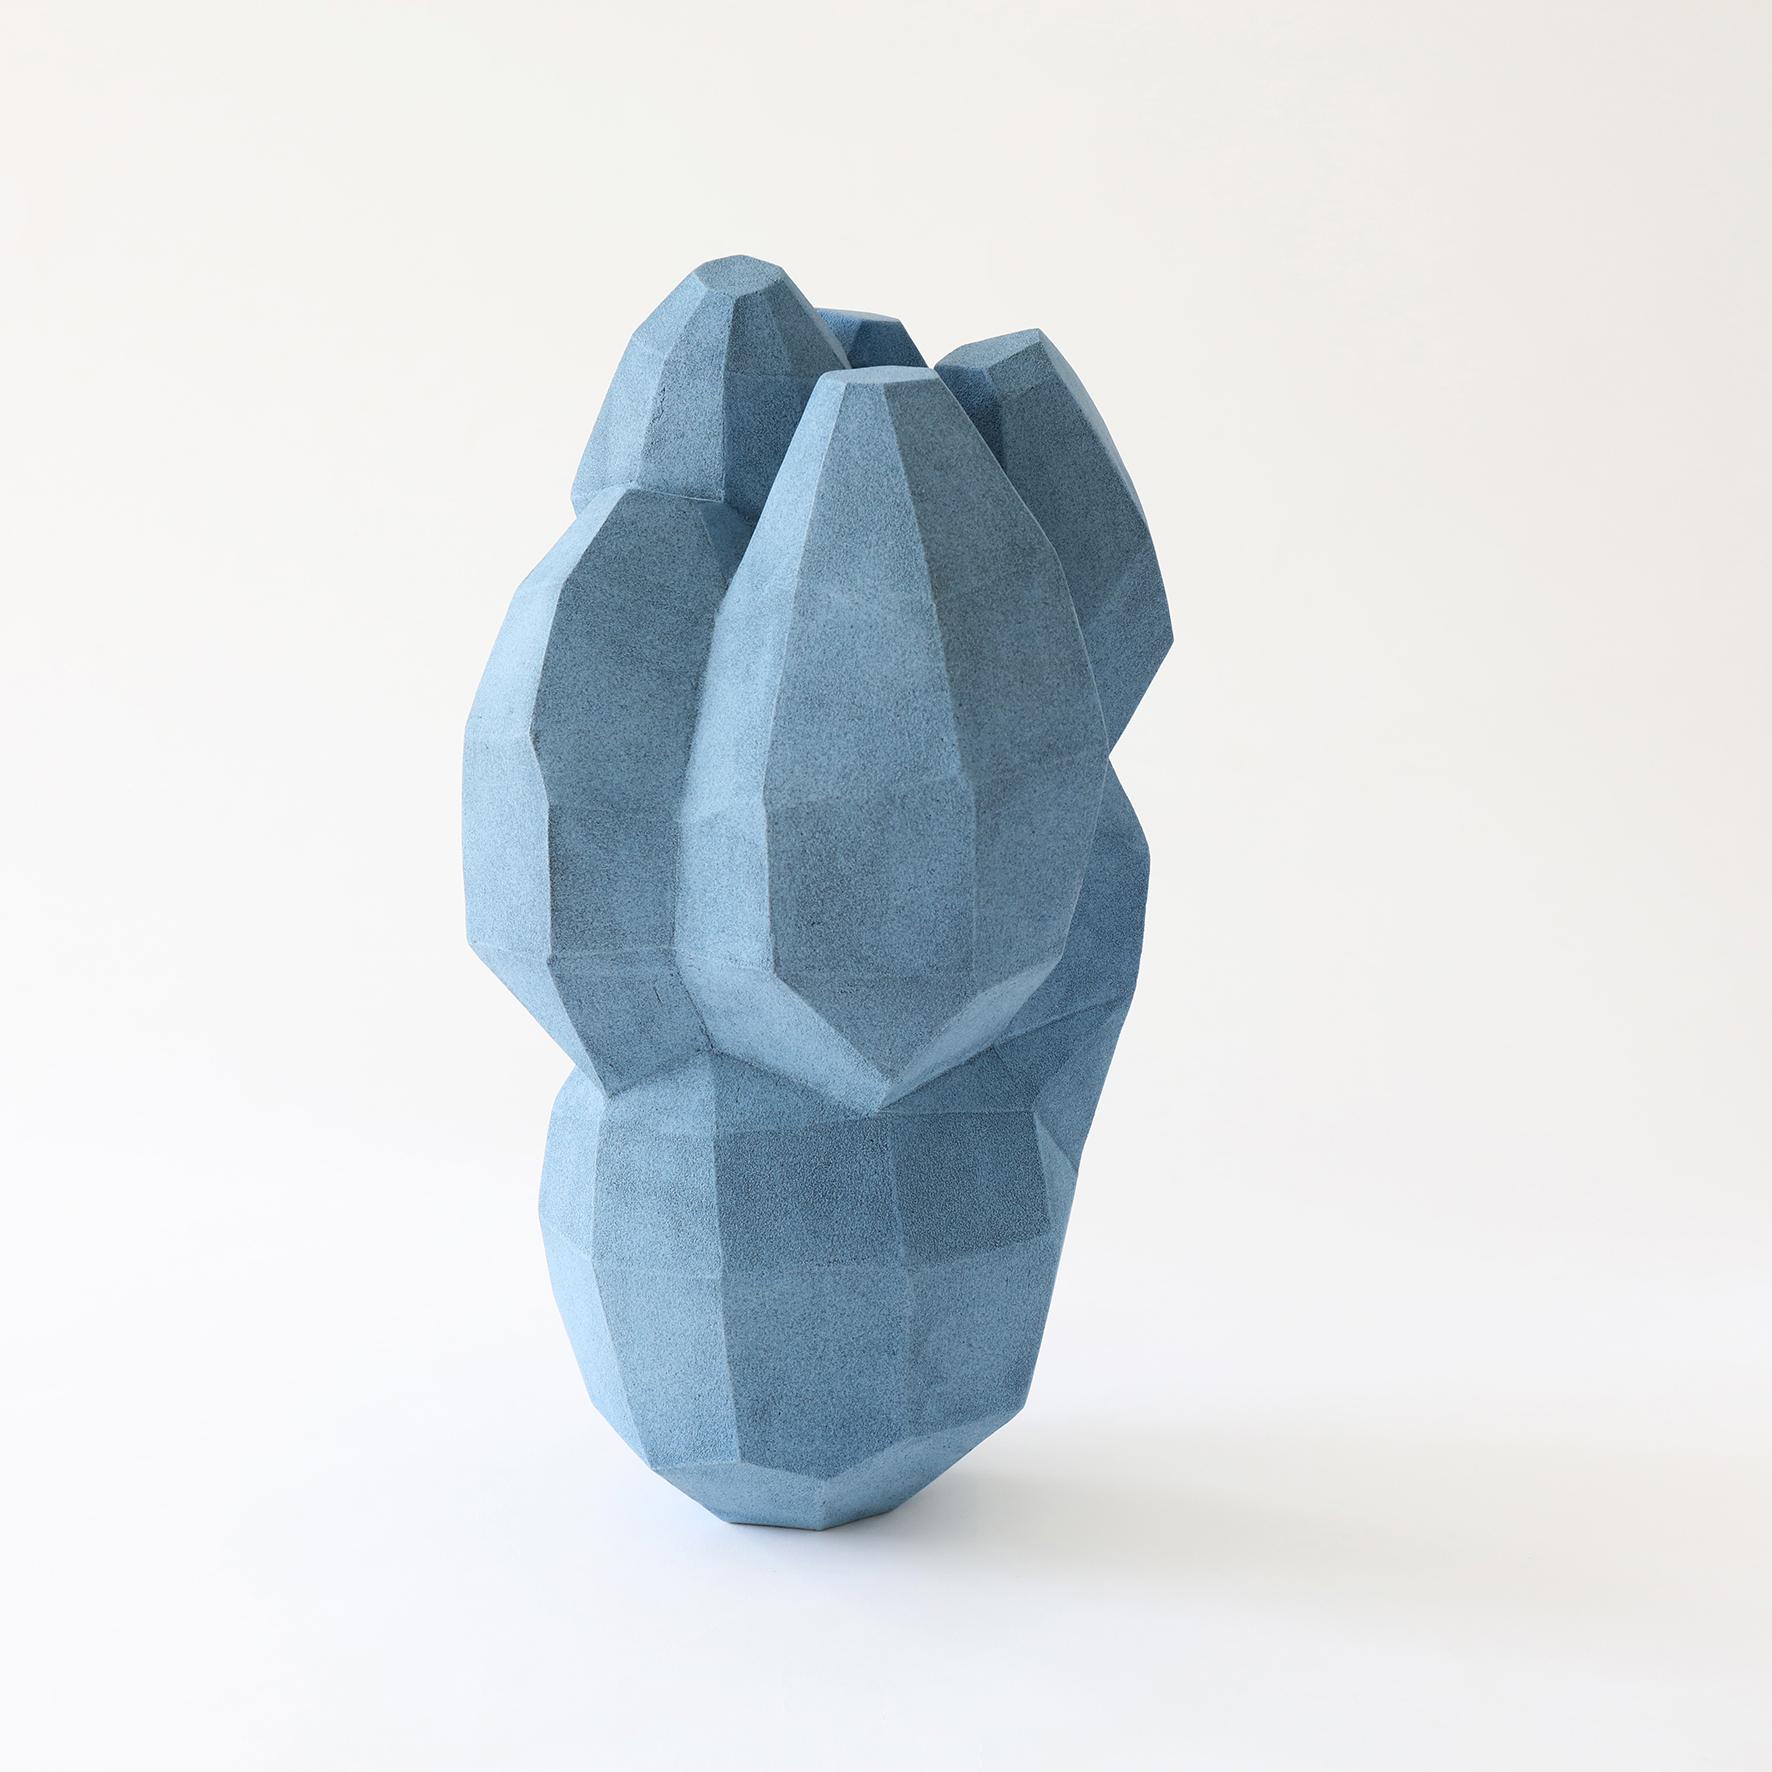 Unique Blue Pottery by Turi Heisselberg Pedersen (Dänisch)